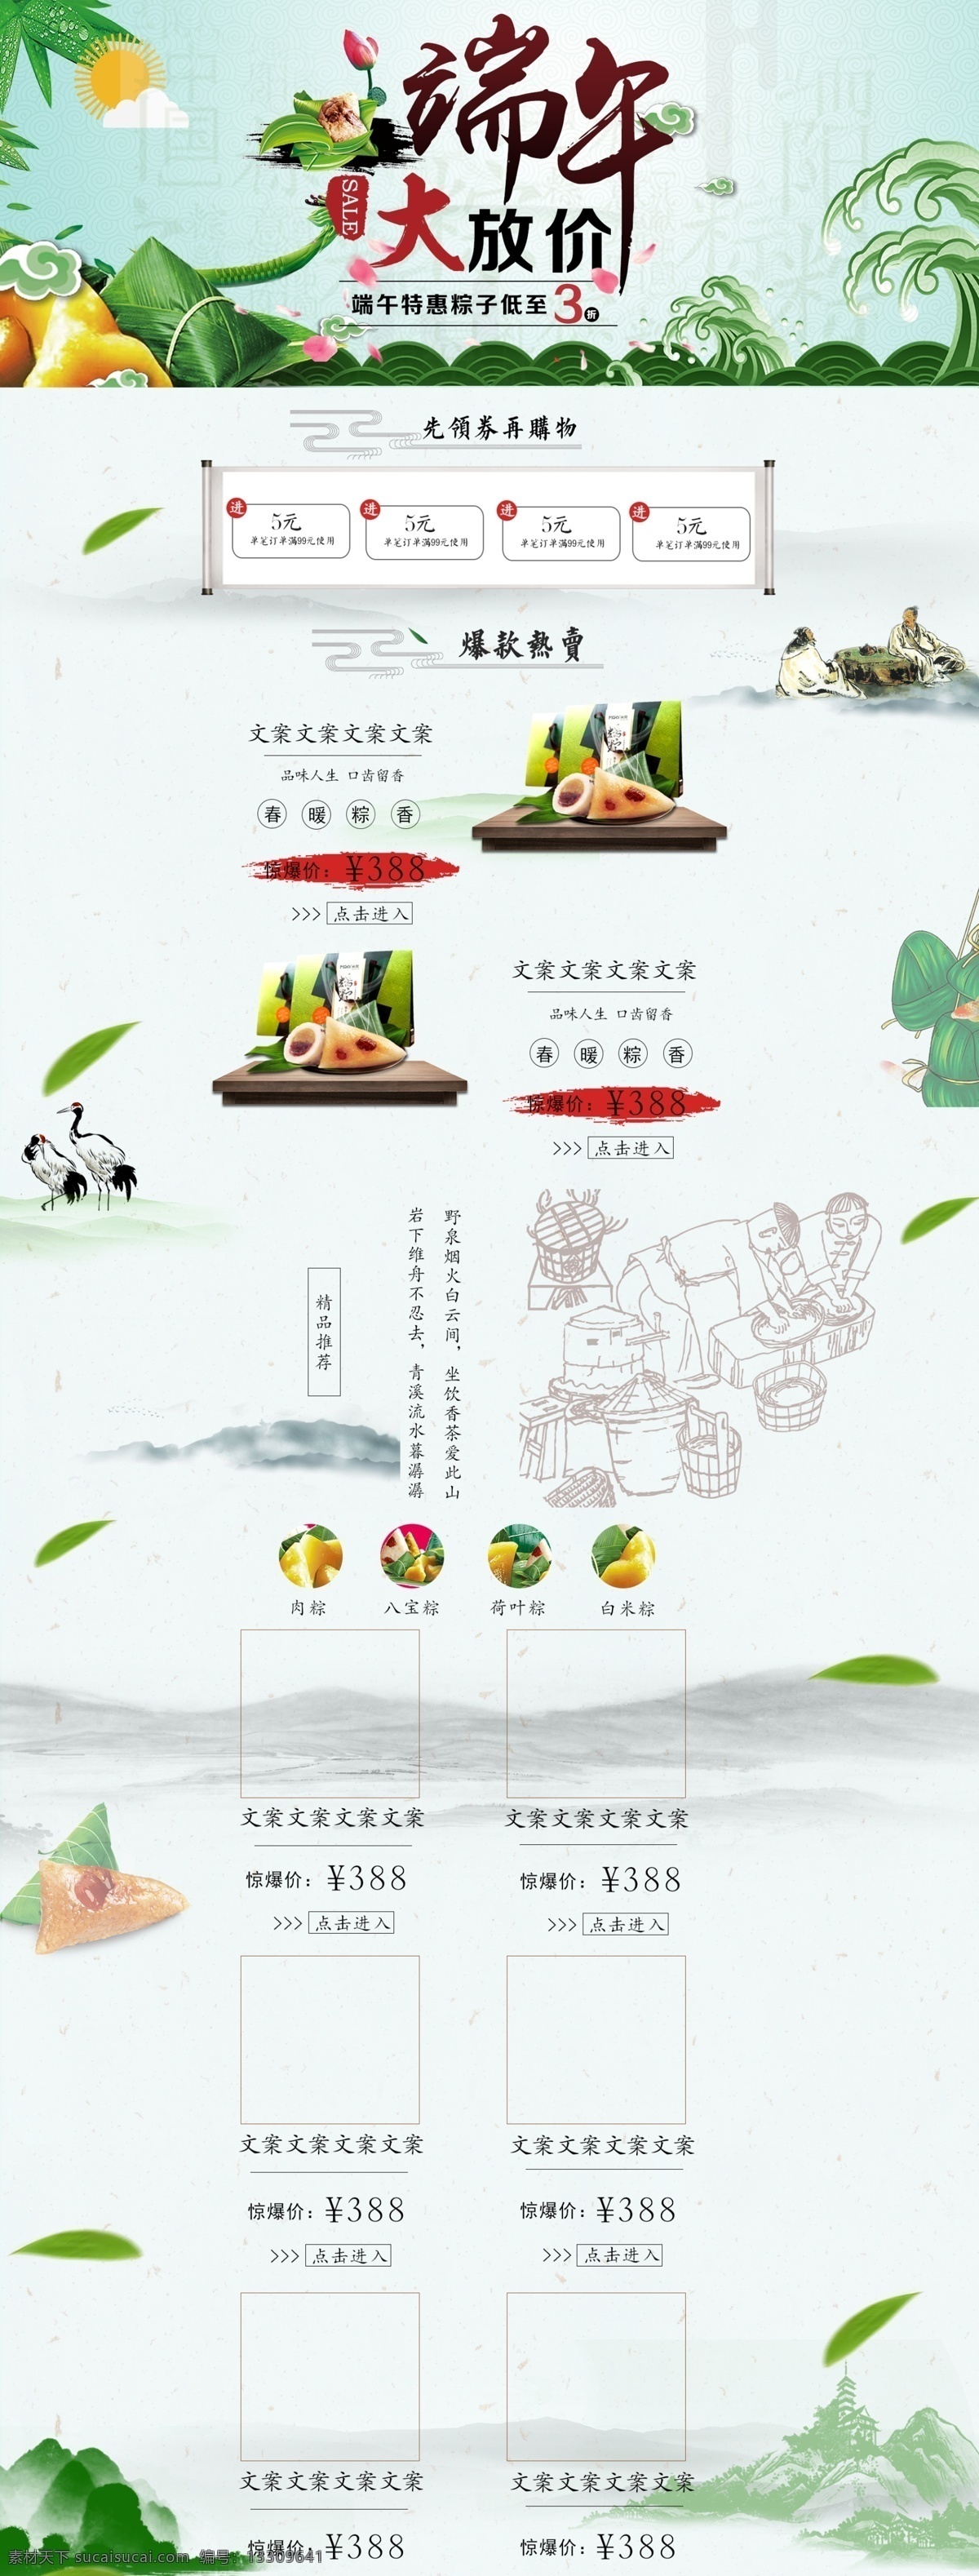 中国 风 粽子 食品 店铺 装修 模板 端午节 中国风 网店素材 淘宝界面设计 淘宝 广告 banner